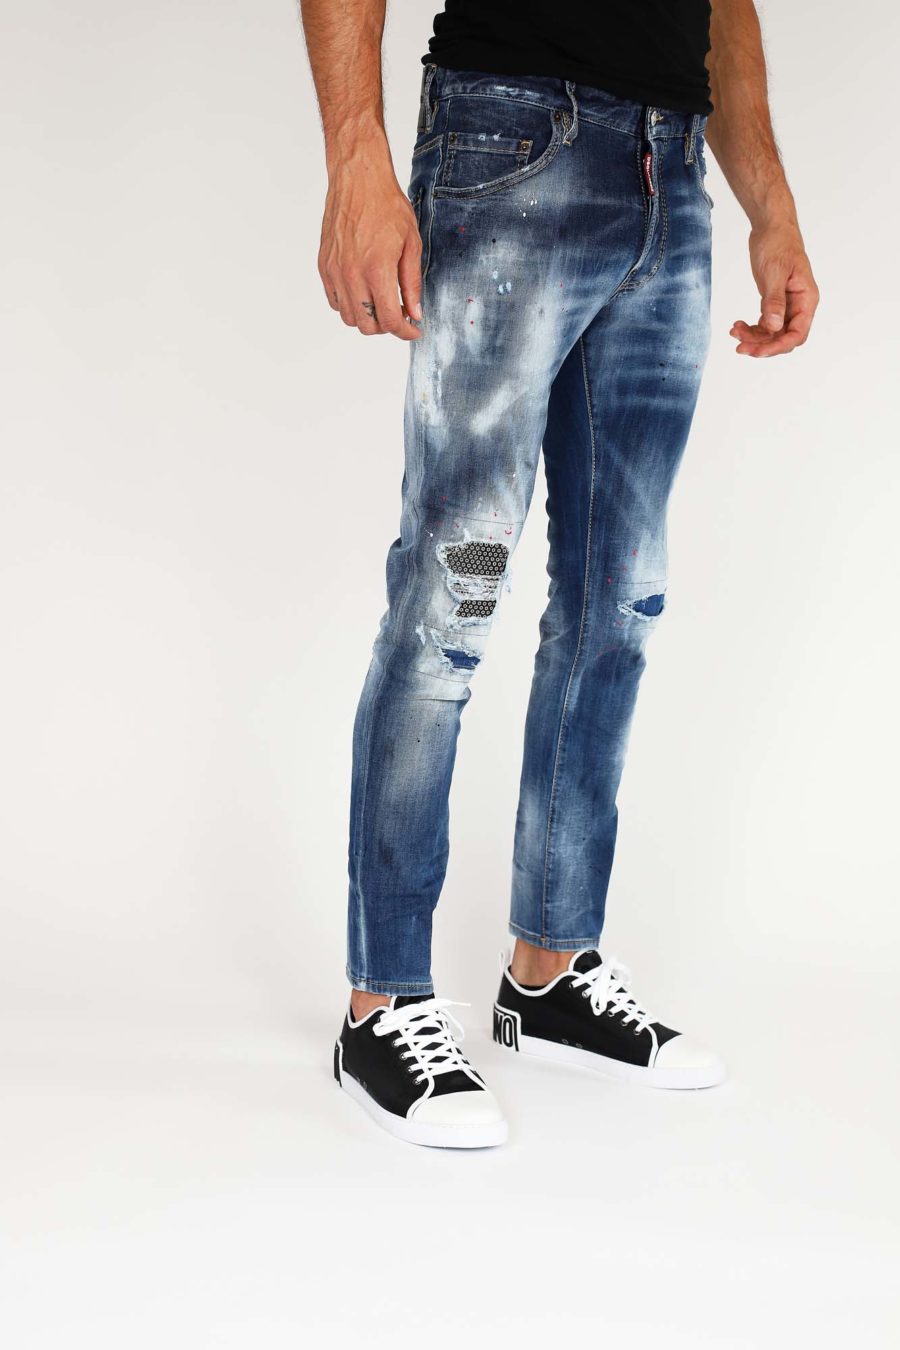 Dsquared2 - Pantalón vaquero azul oscuro skater jean - BLS Fashion